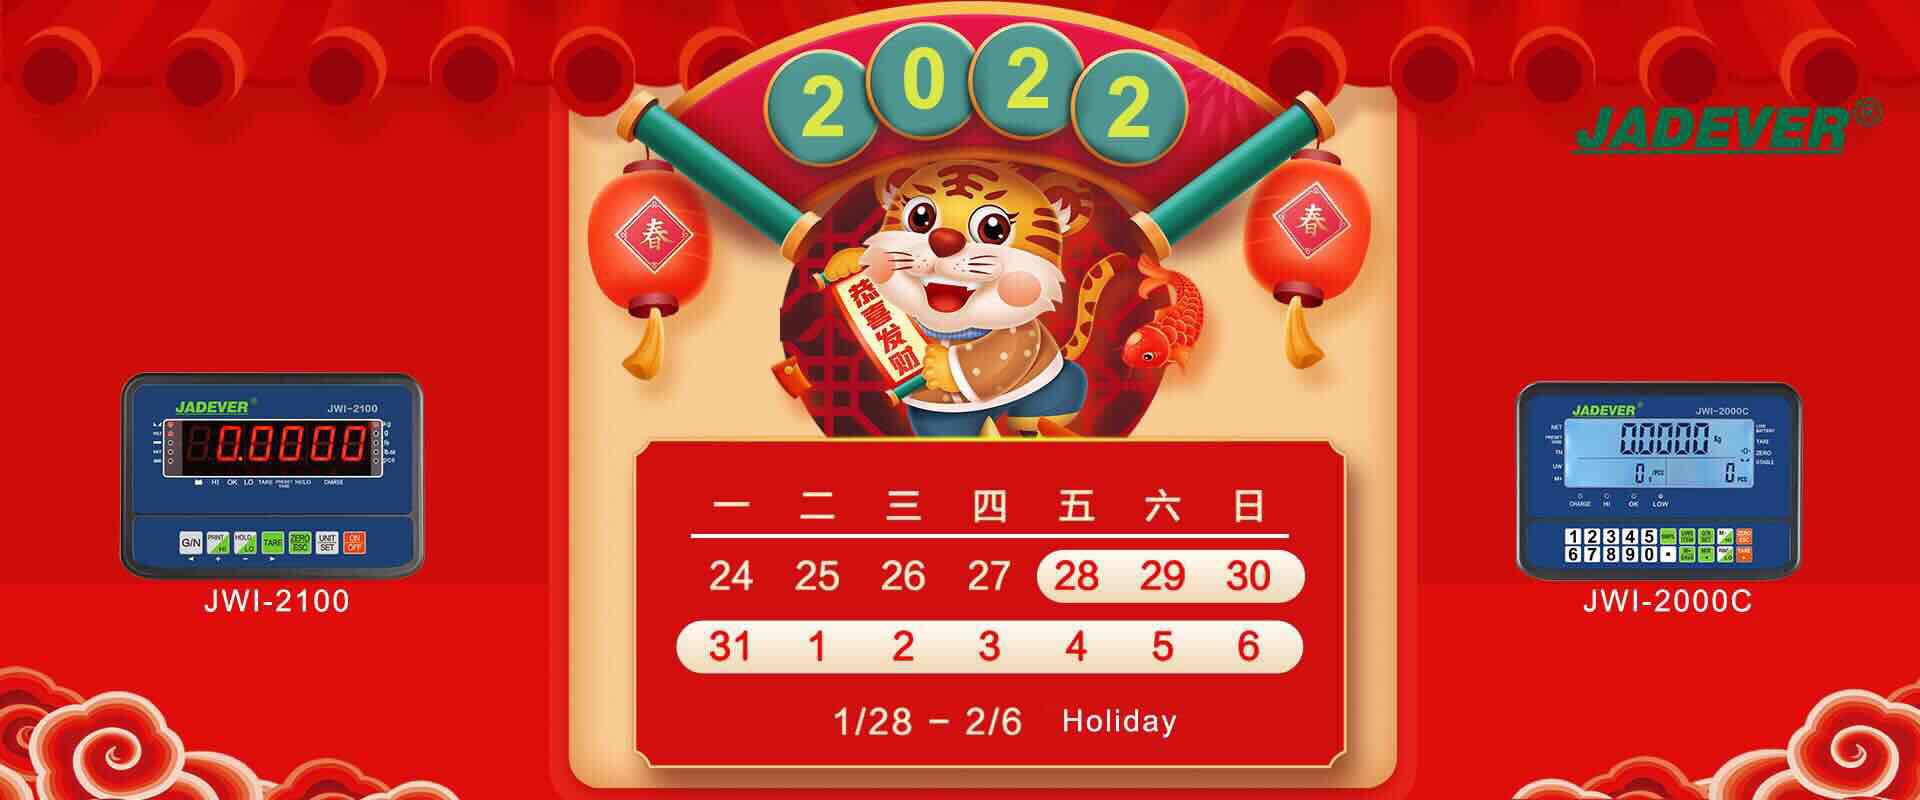 avviso festivo - capodanno lunare cinese 2022